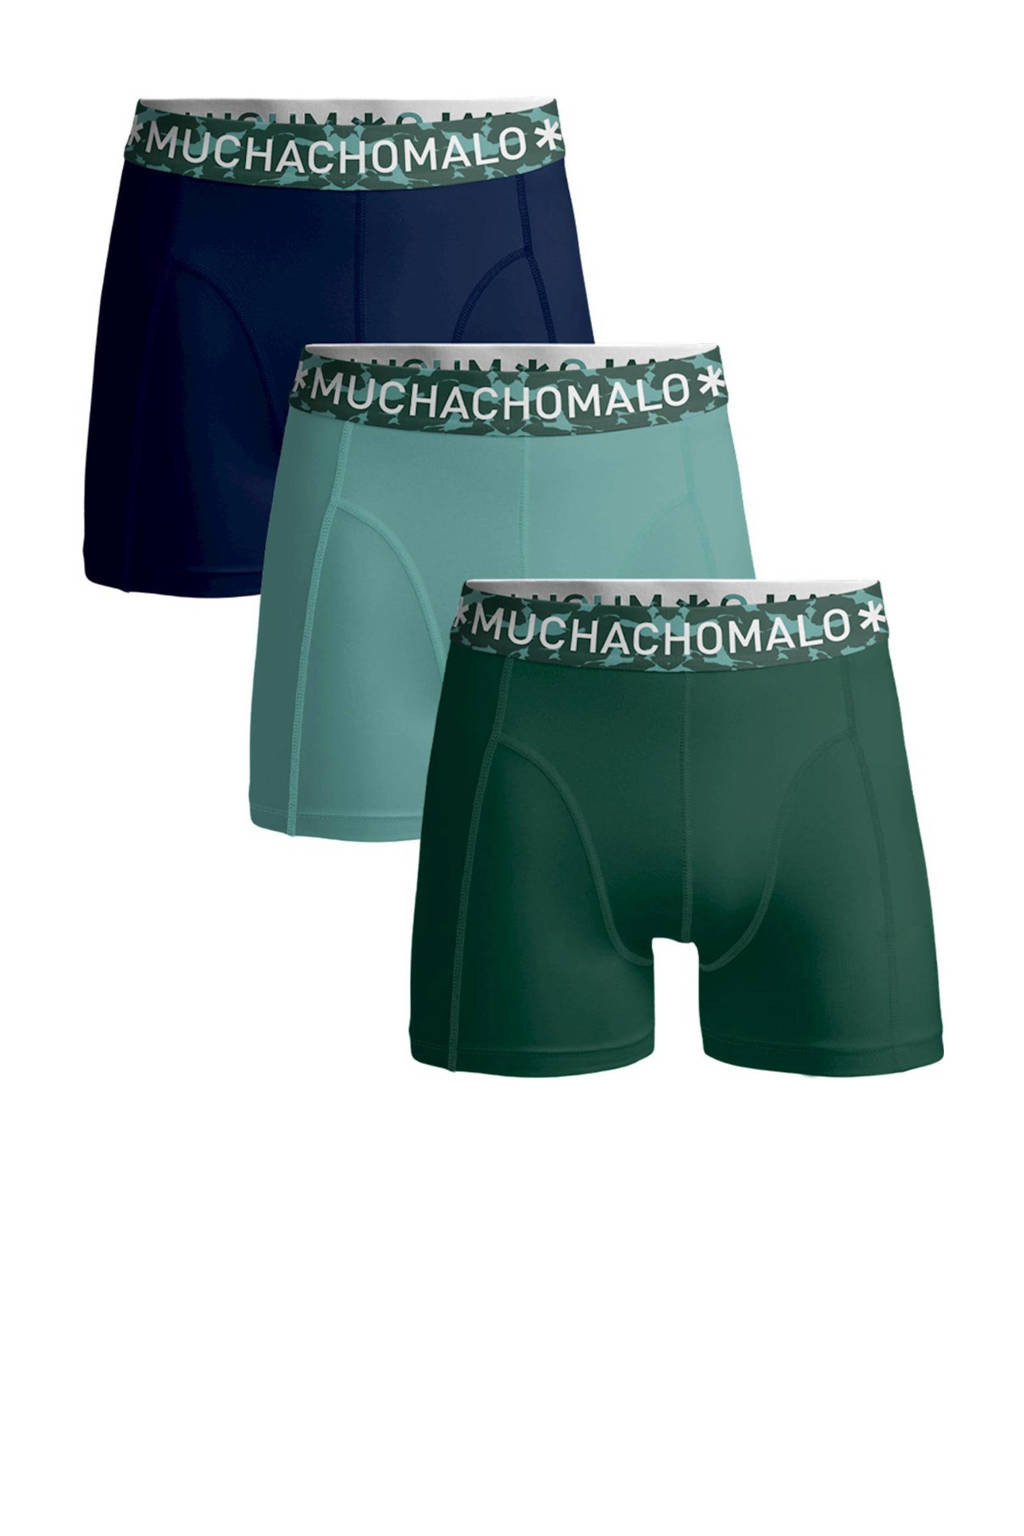 Muchachomalo   boxershort Solid - set van 3 d.groen/groen/blauw, D.groen/groen/blauw